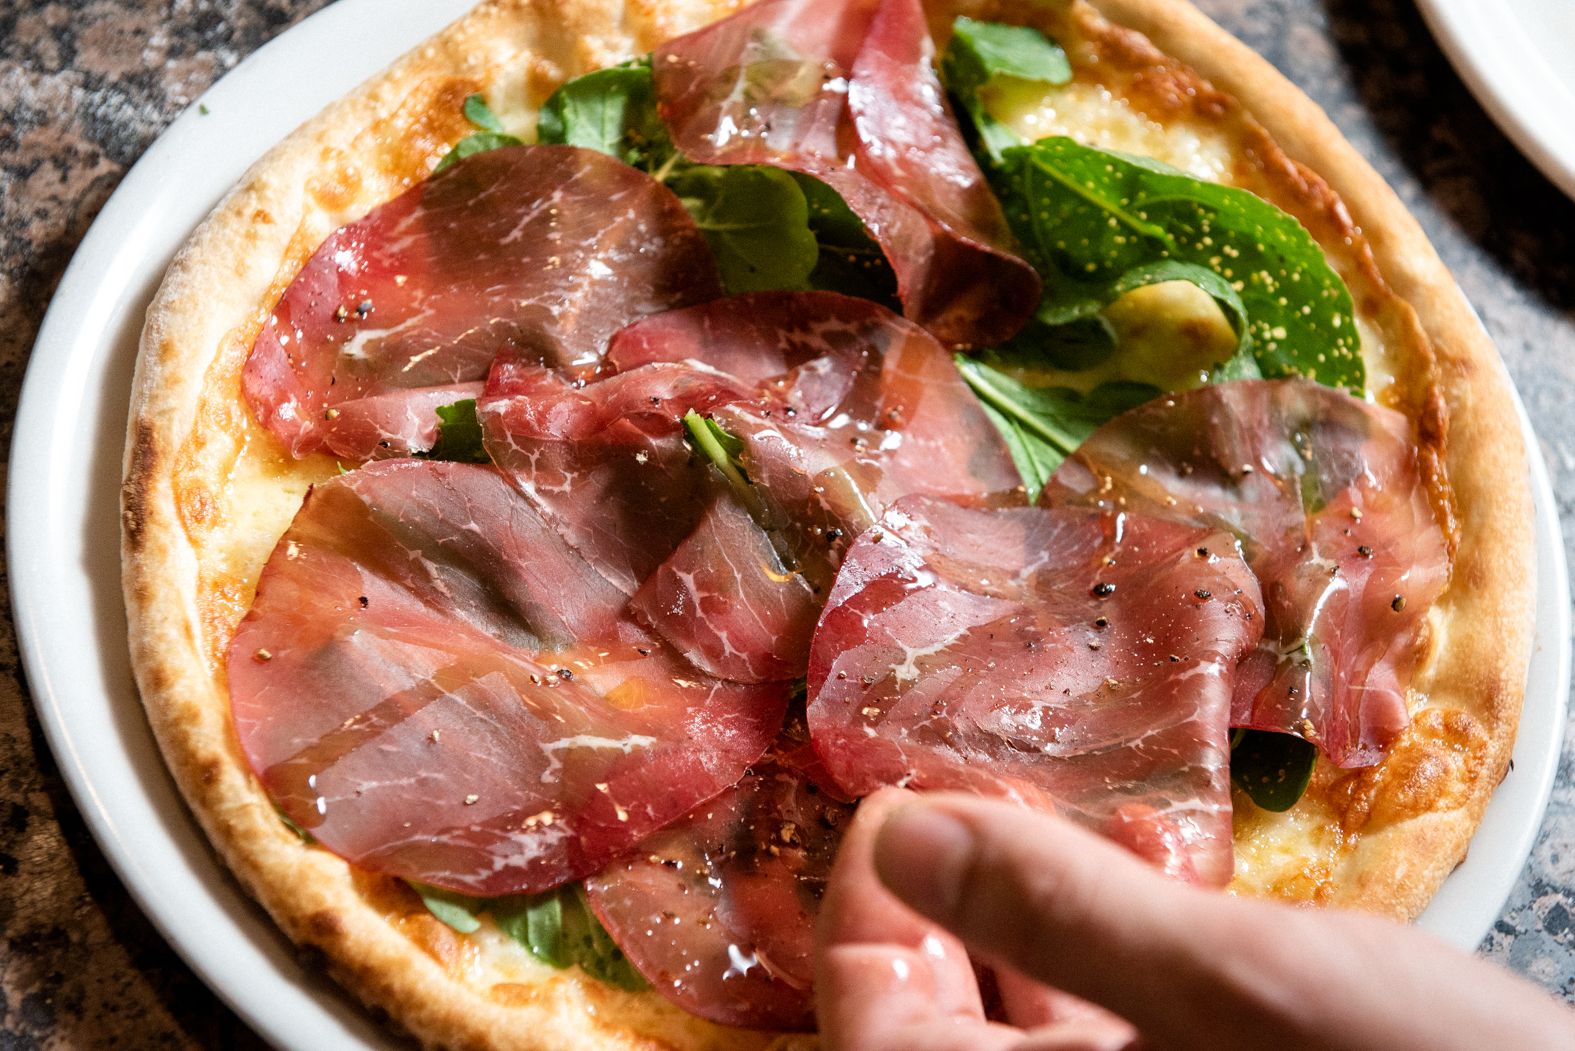 Una d elas clásica y auténticas pizzas italianas que elaboran en 'il Forno'.       MAURI BUHIGAS